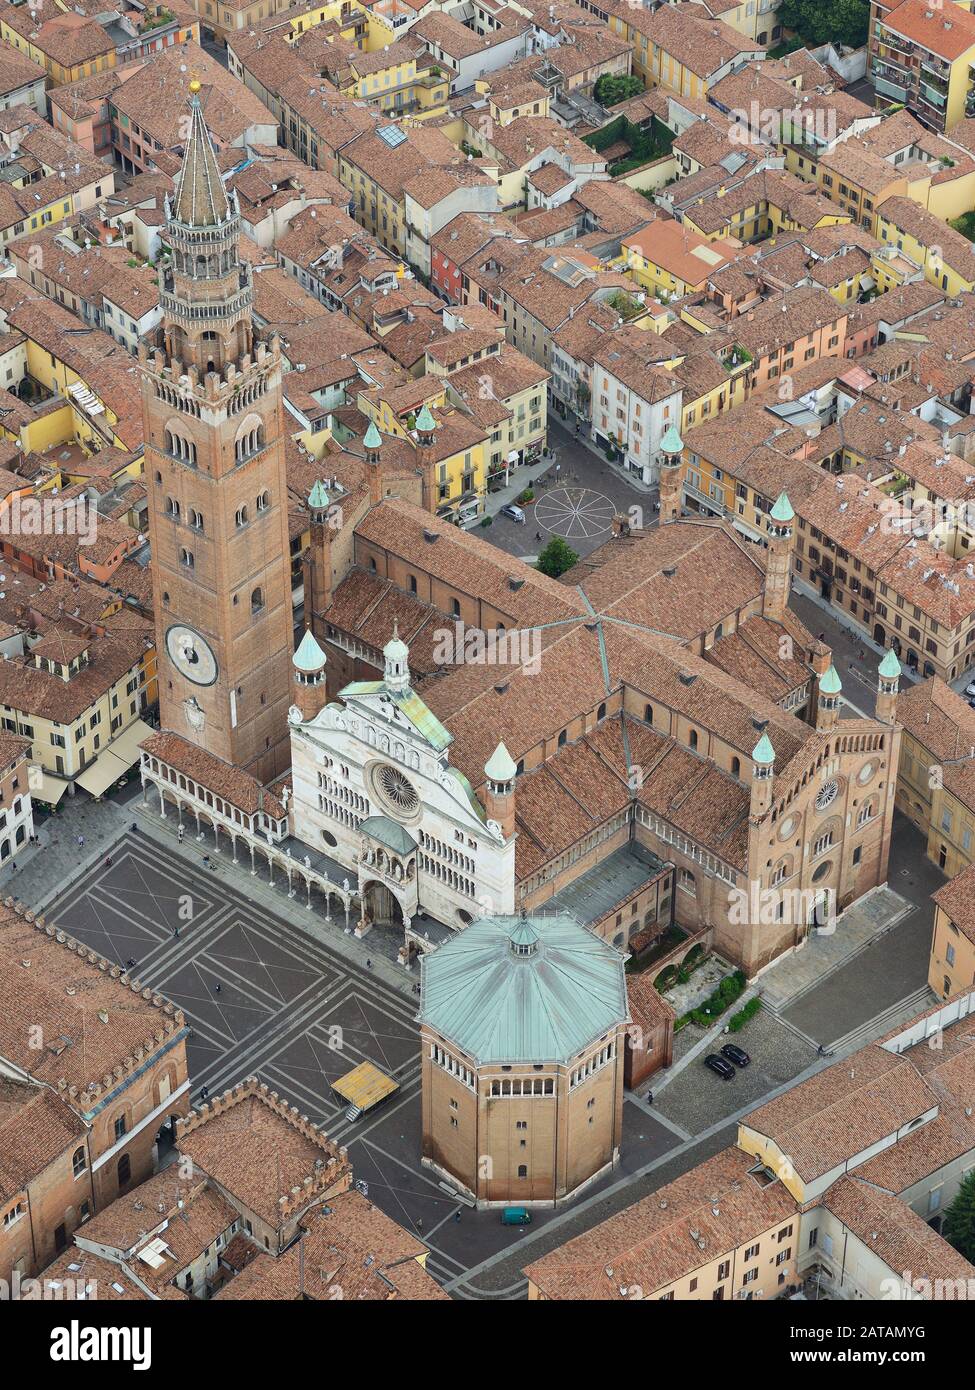 VUE AÉRIENNE.Campanile et cathédrale de Cremona.Province de Cremona, Lombardie, Italie. Banque D'Images